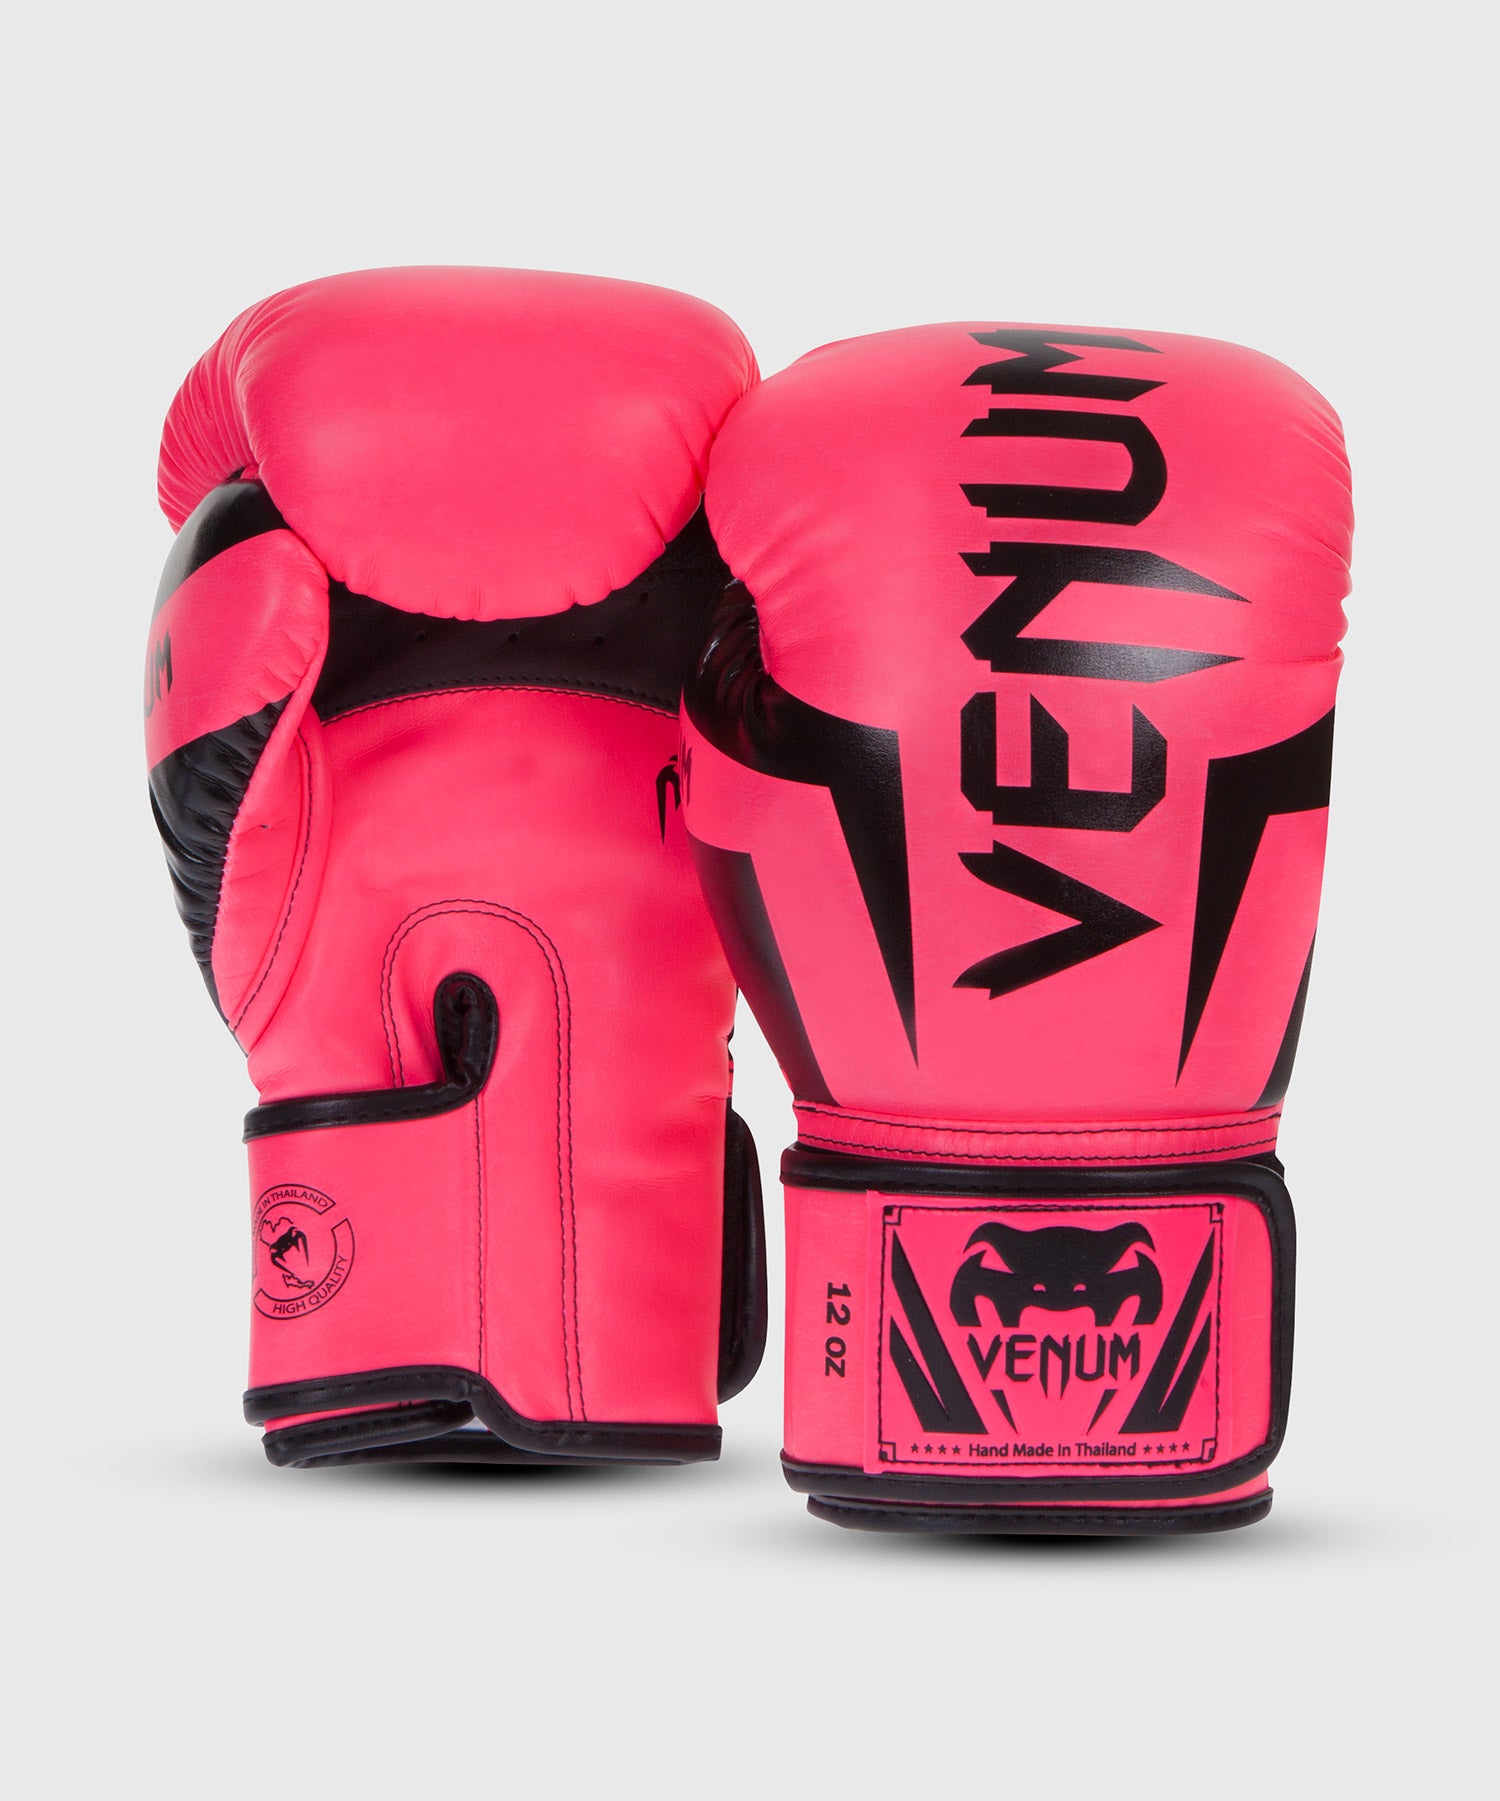 gants de boxe venum rose - KSIUS GYM CLUB LYON